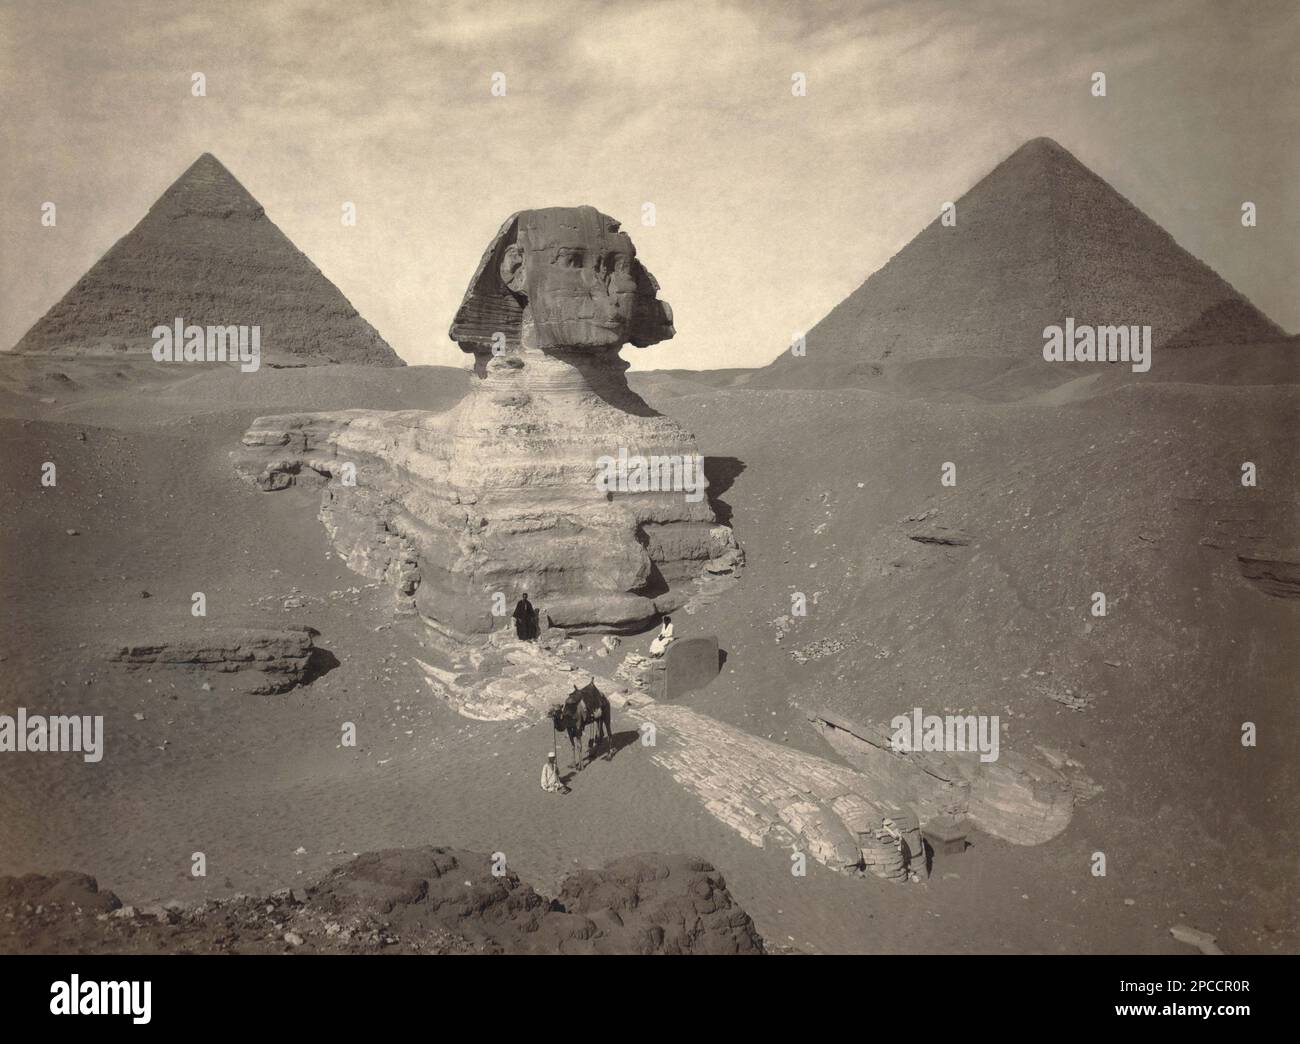 1890 ca. , GIZA , El CAIRO , EGYPT :The Great Pyramid of  Giza  and the Great Sphinx partially excaved  in Giza Necropolis  . Undentified photographer .- ANTICO EGITTO - GRANDE SFINGE - PIRAMIDE - PIRAMIDI -  FOTO STORICHE - HISTORY - GEOGRAFIA - GEOGRAPHY  - ARCHITETTURA - ARCHITECTURE - ARCHEOLOGIA - ARCHEOLOGY -  Pyramids - monumento -   - Scavi archeologici - Sito archeologico - TURISMO - TURISTI - TOURISTS - VIAGGIO - TRAVEL  ----  Archivio GBB Stock Photo